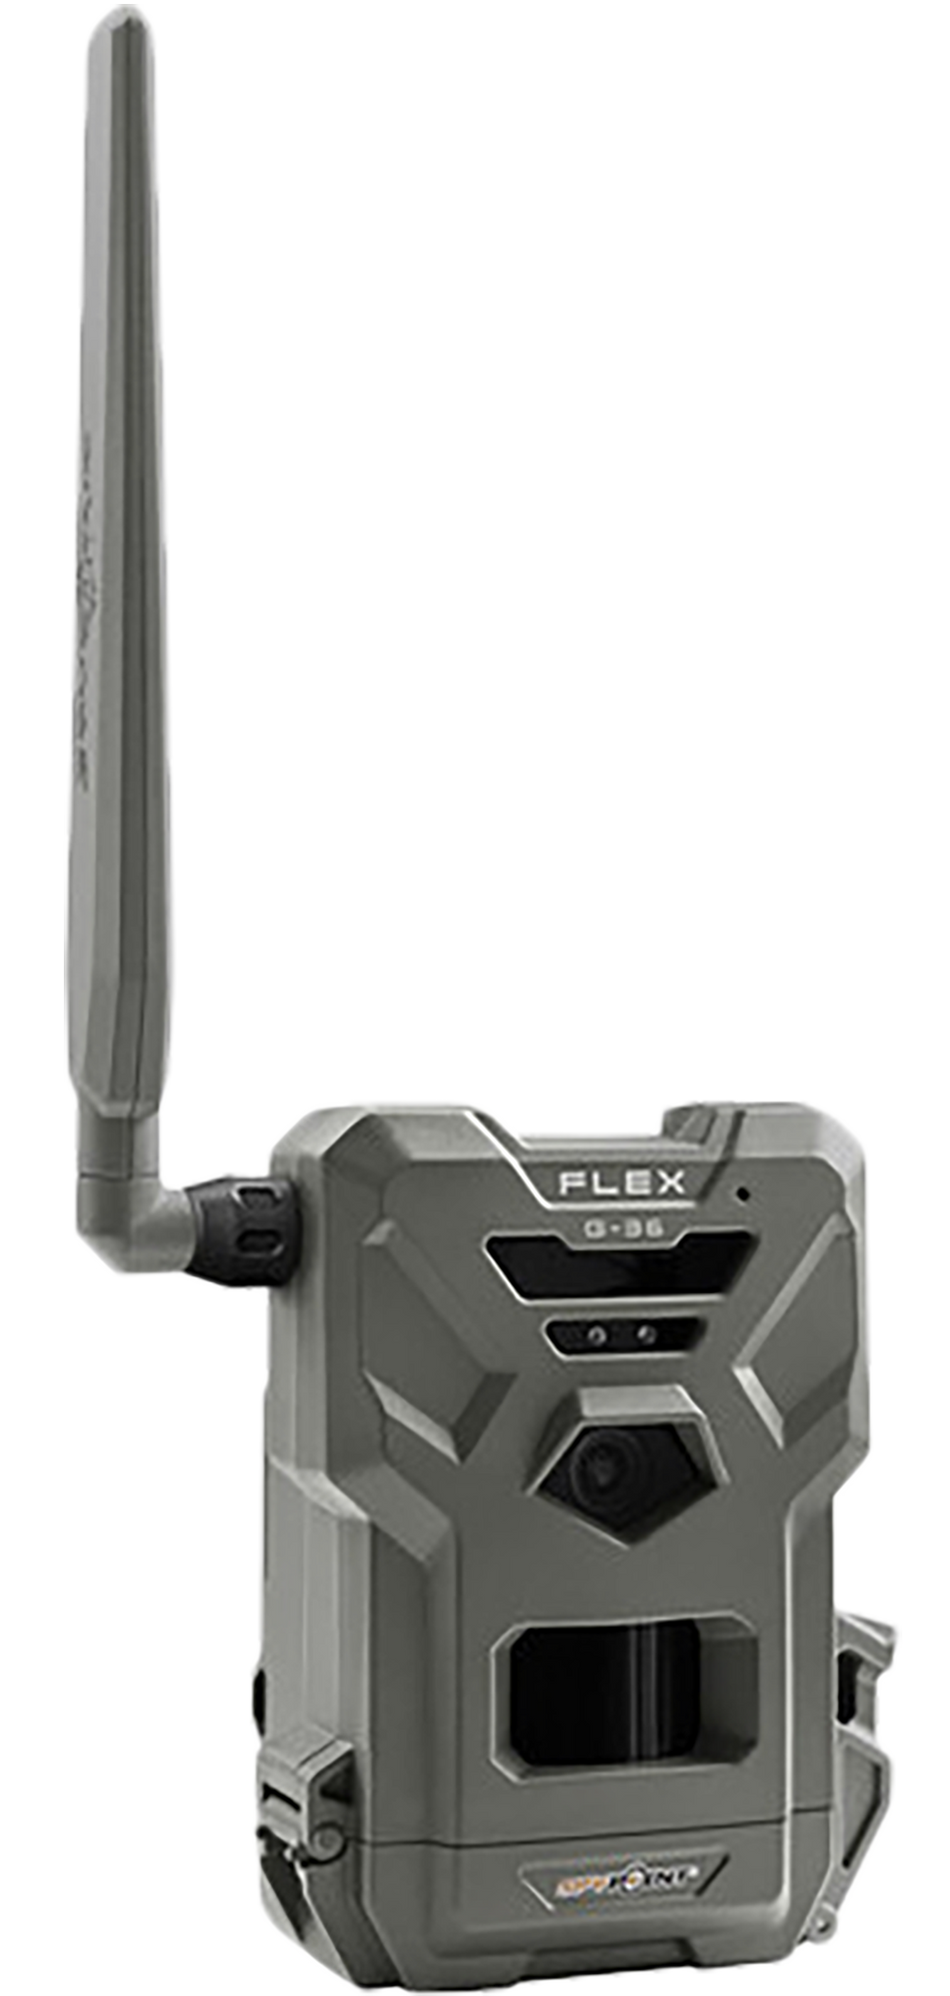 Spypoint FLEX-G36 Cellular Trail Camera